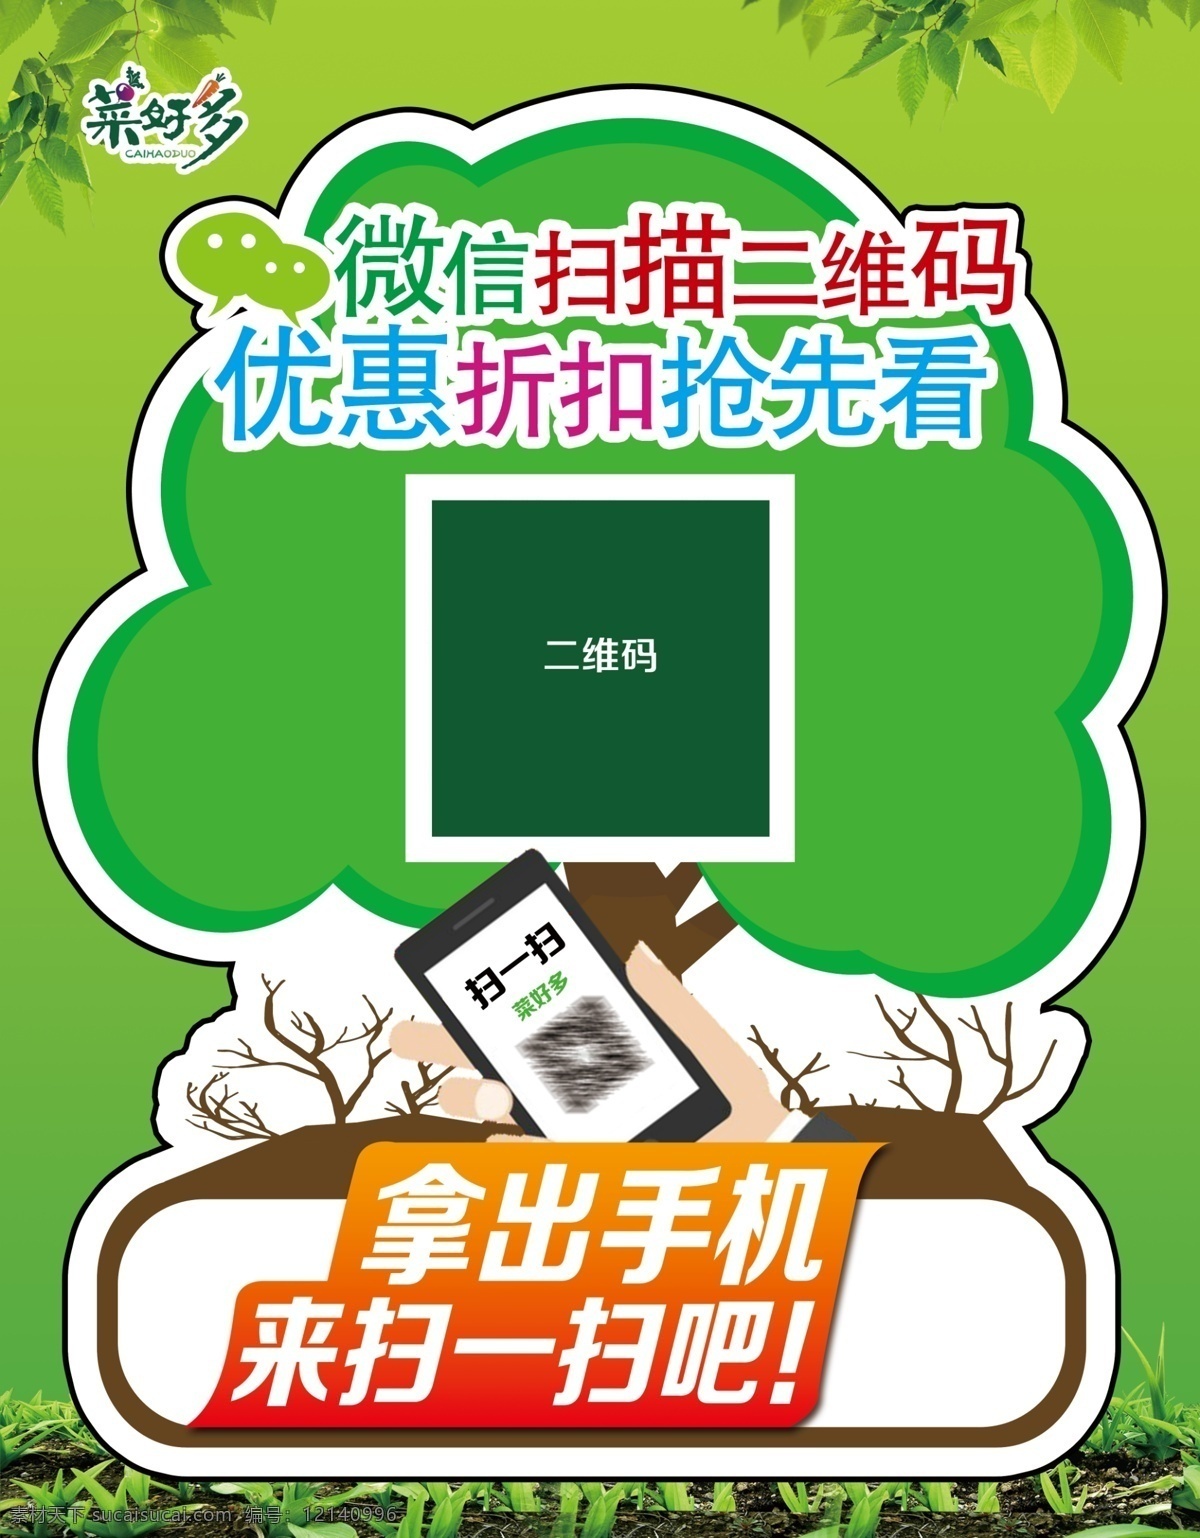 手机扫码 菜好多 程序二维码 二维码海报 小程序 绿色背景 绿色素材 扫码 扫一扫